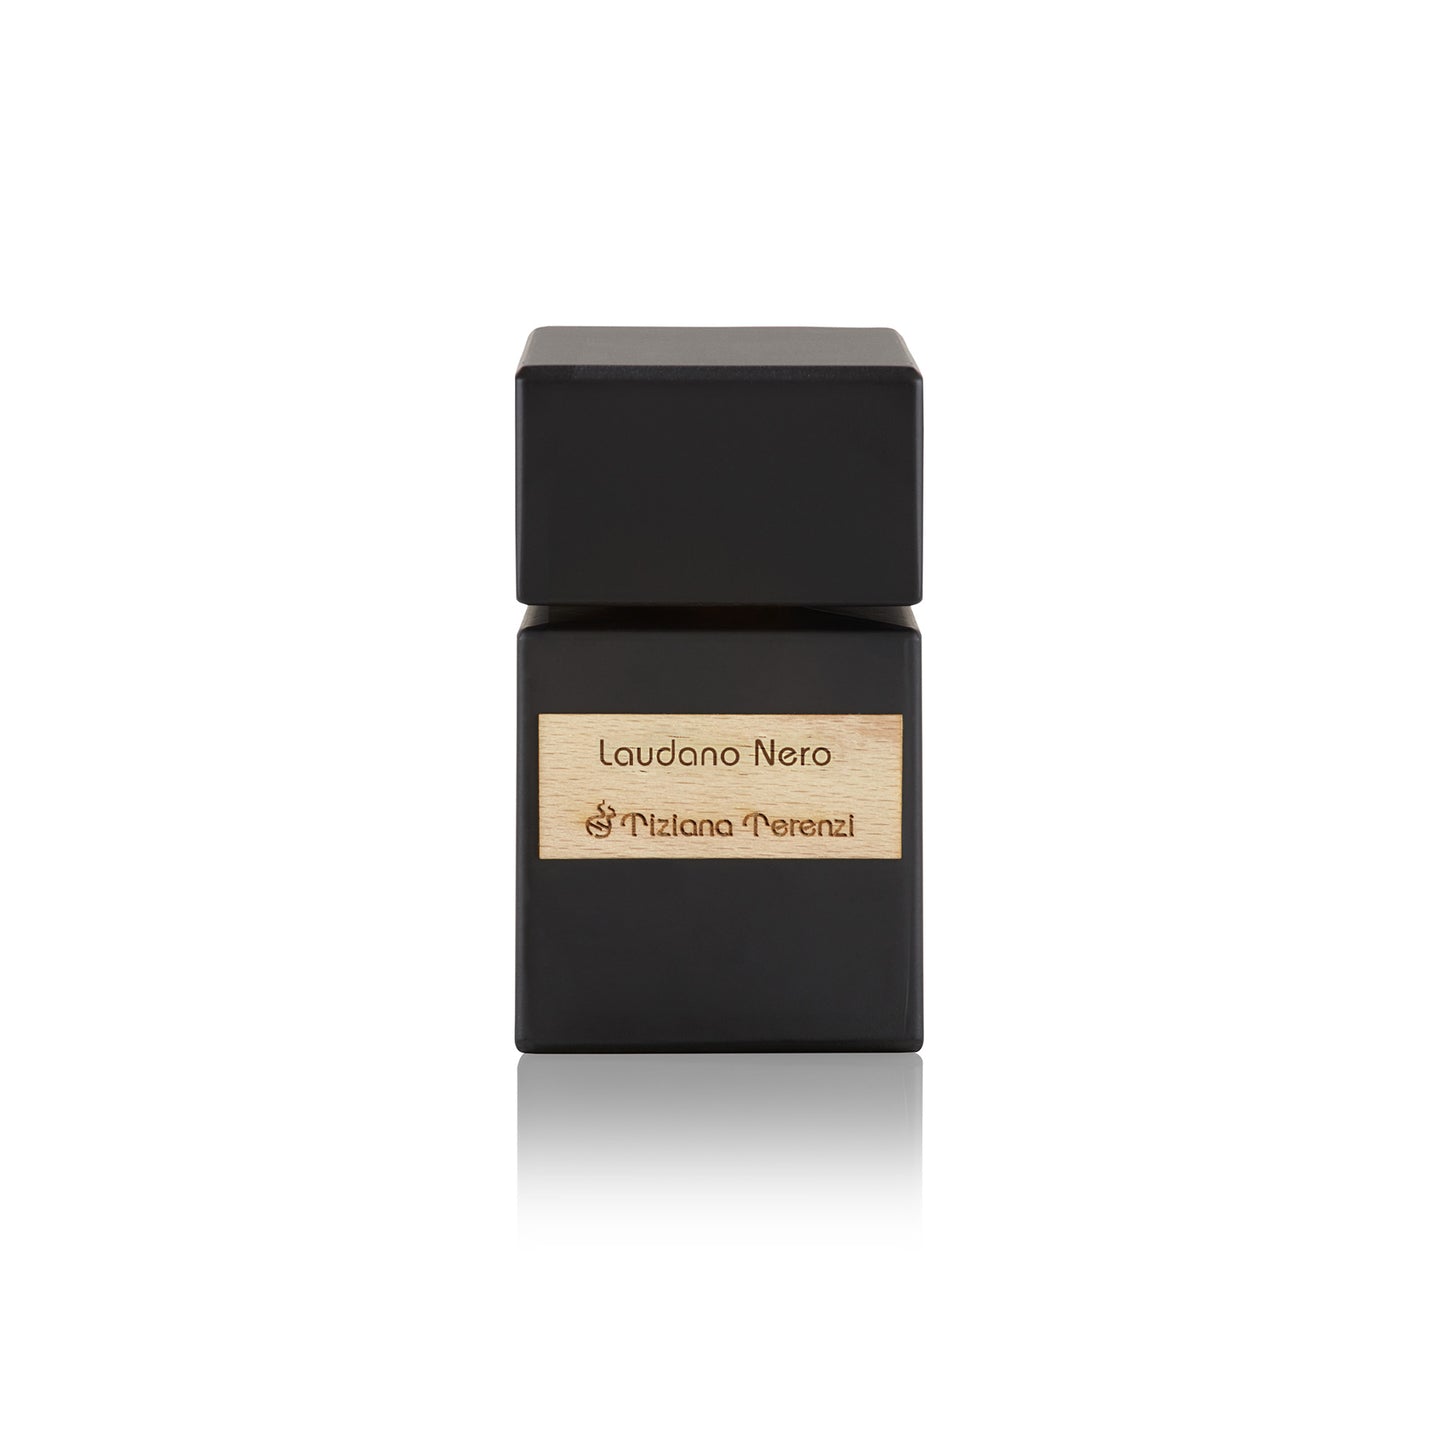 Laudano Nero 1.5ml Sample Vial - Extrait de Parfum